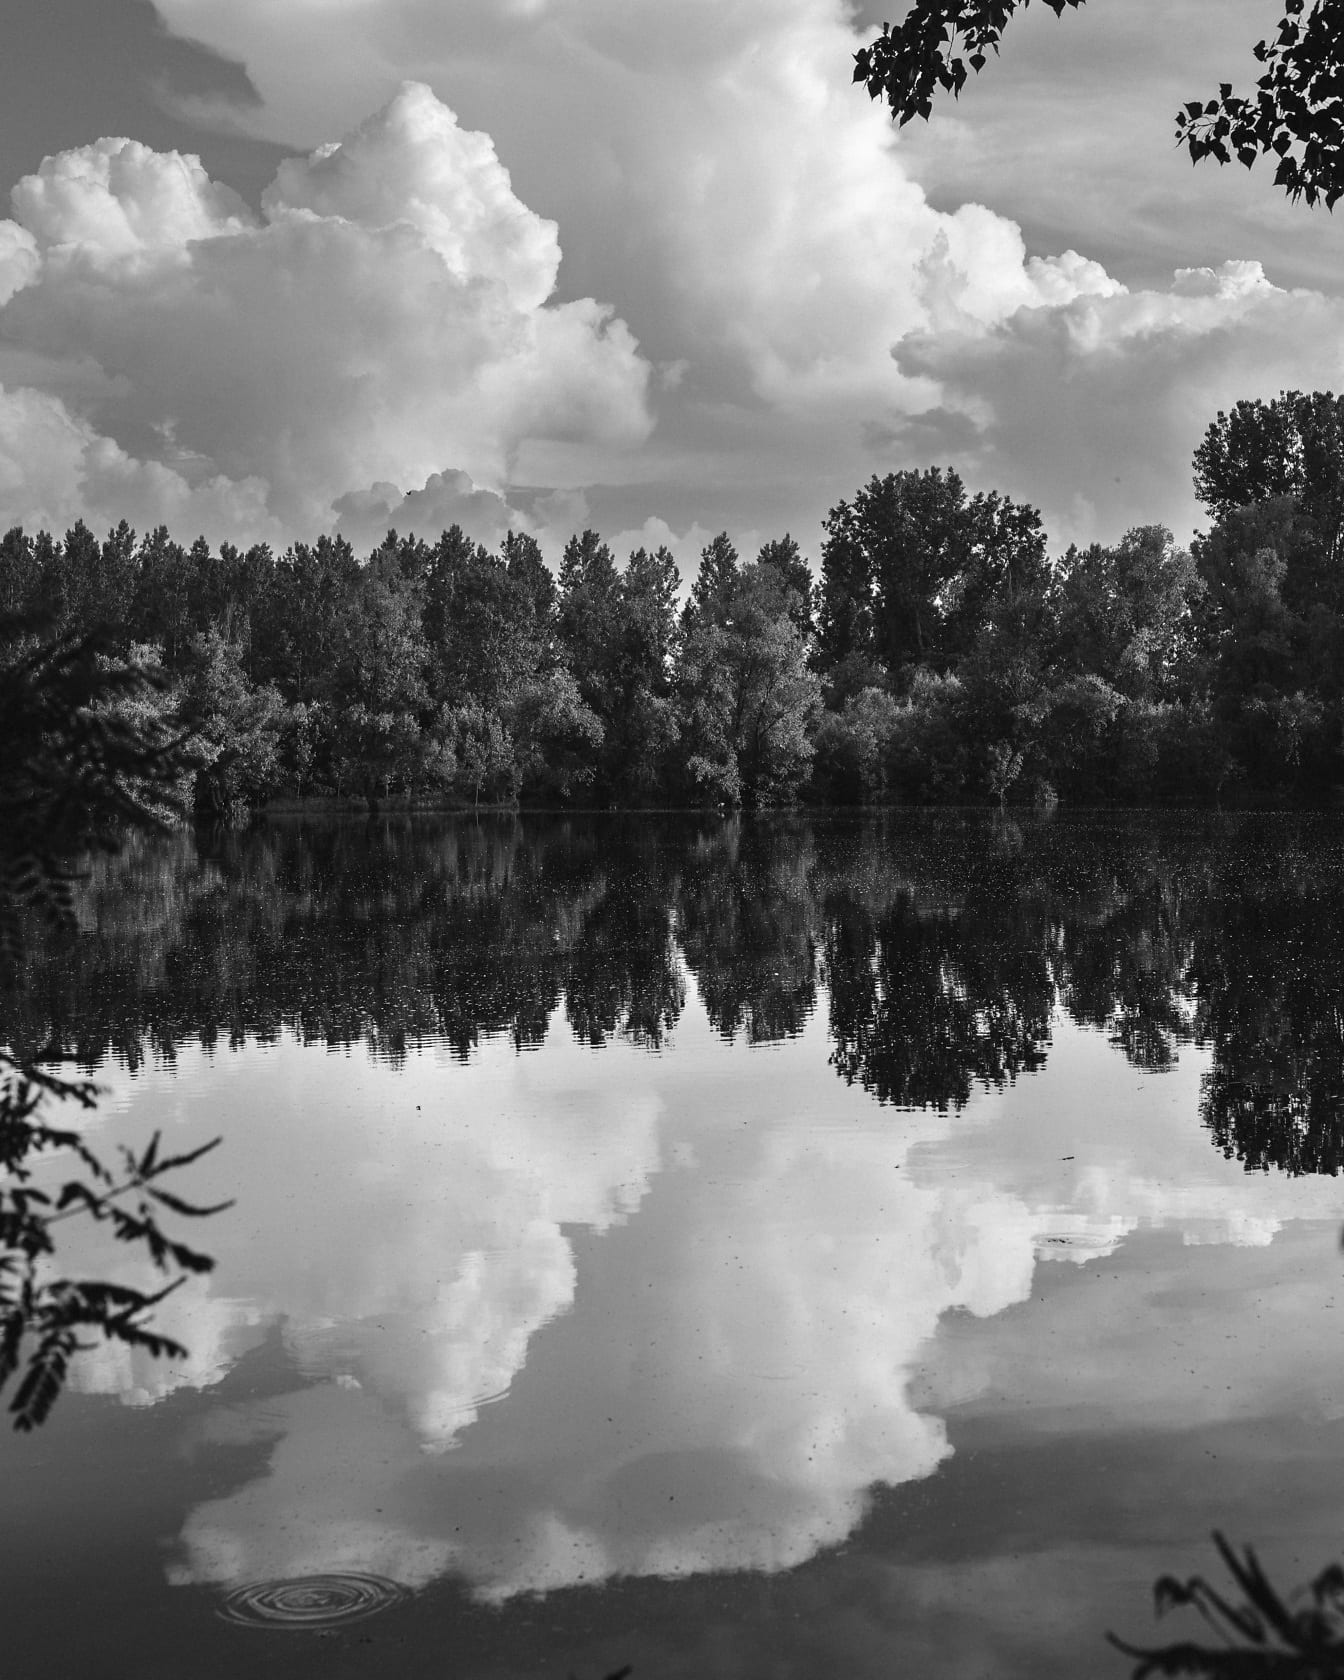 Fotografía de paisajes en blanco y negro junto al lago